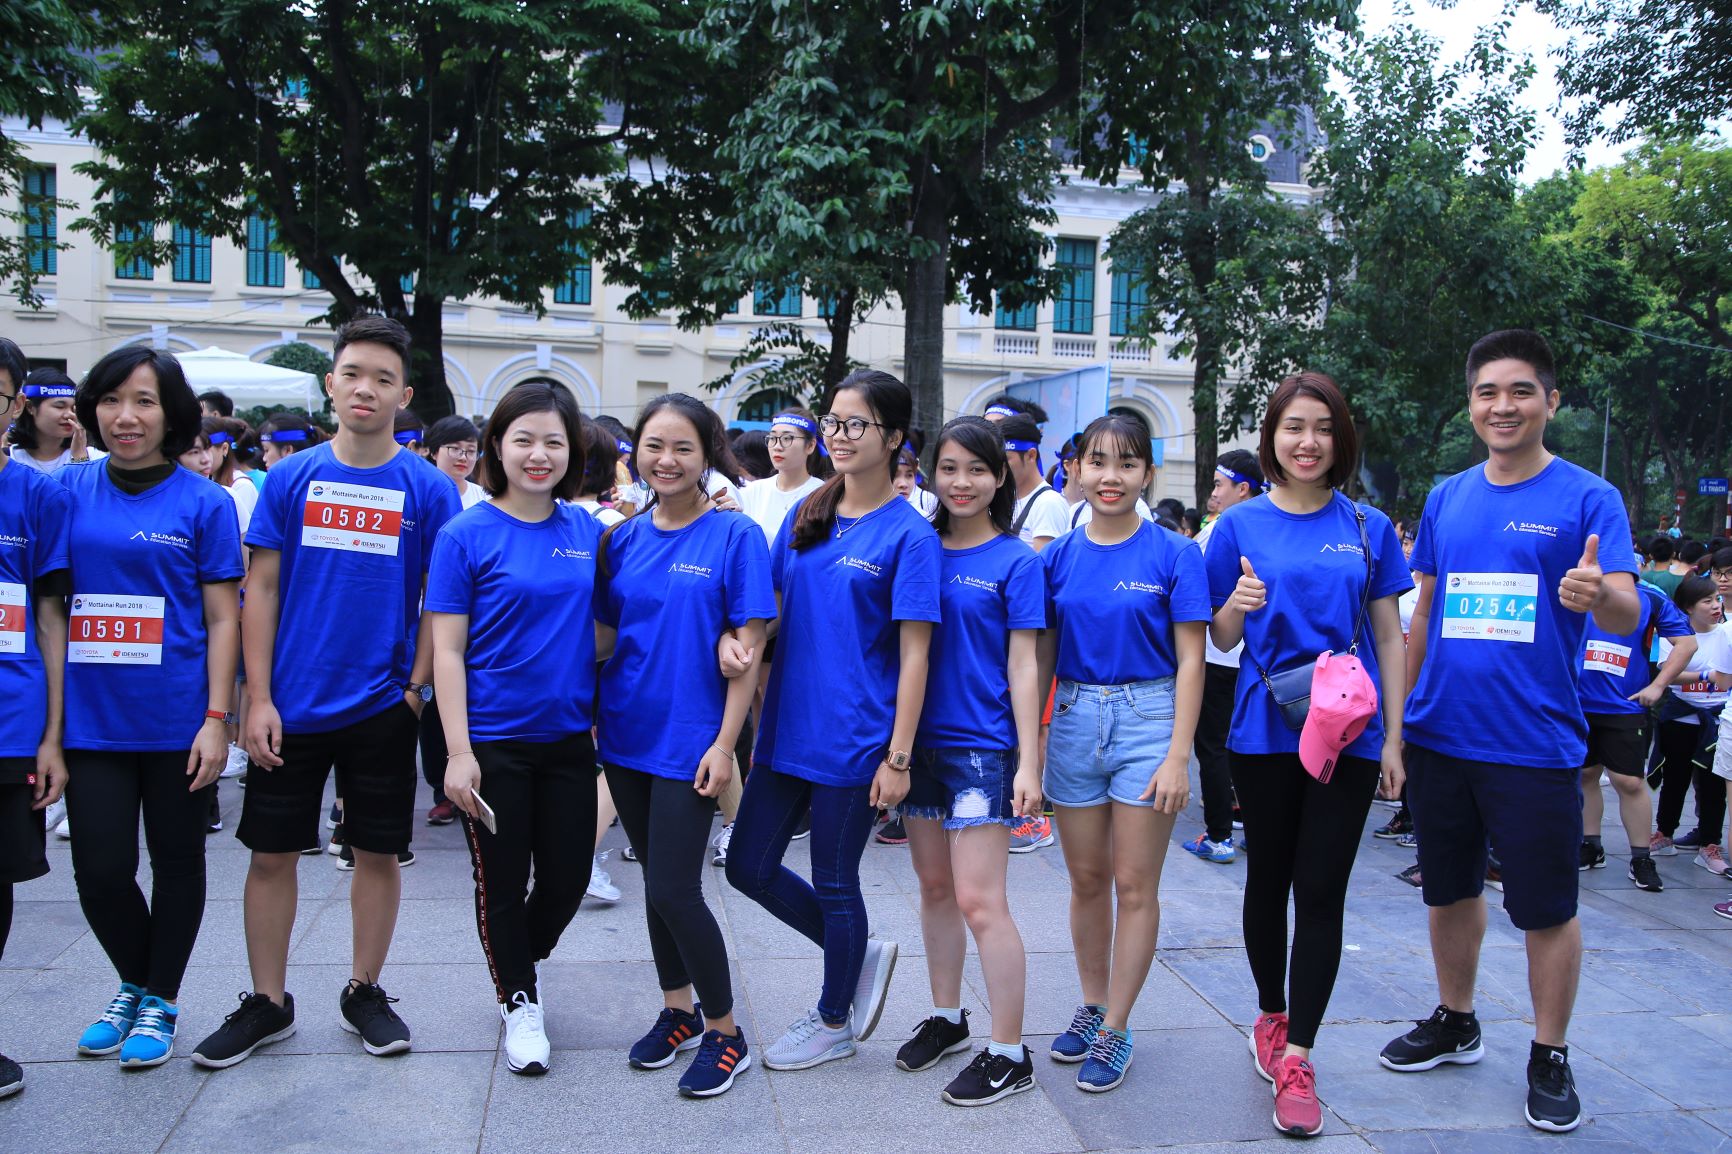 Một tập thể trong đồng phục tham gia 2 cuộc thi: Chạy 1 vòng và chạy 3 vòng quanh hồ Hoàn Kiếm.